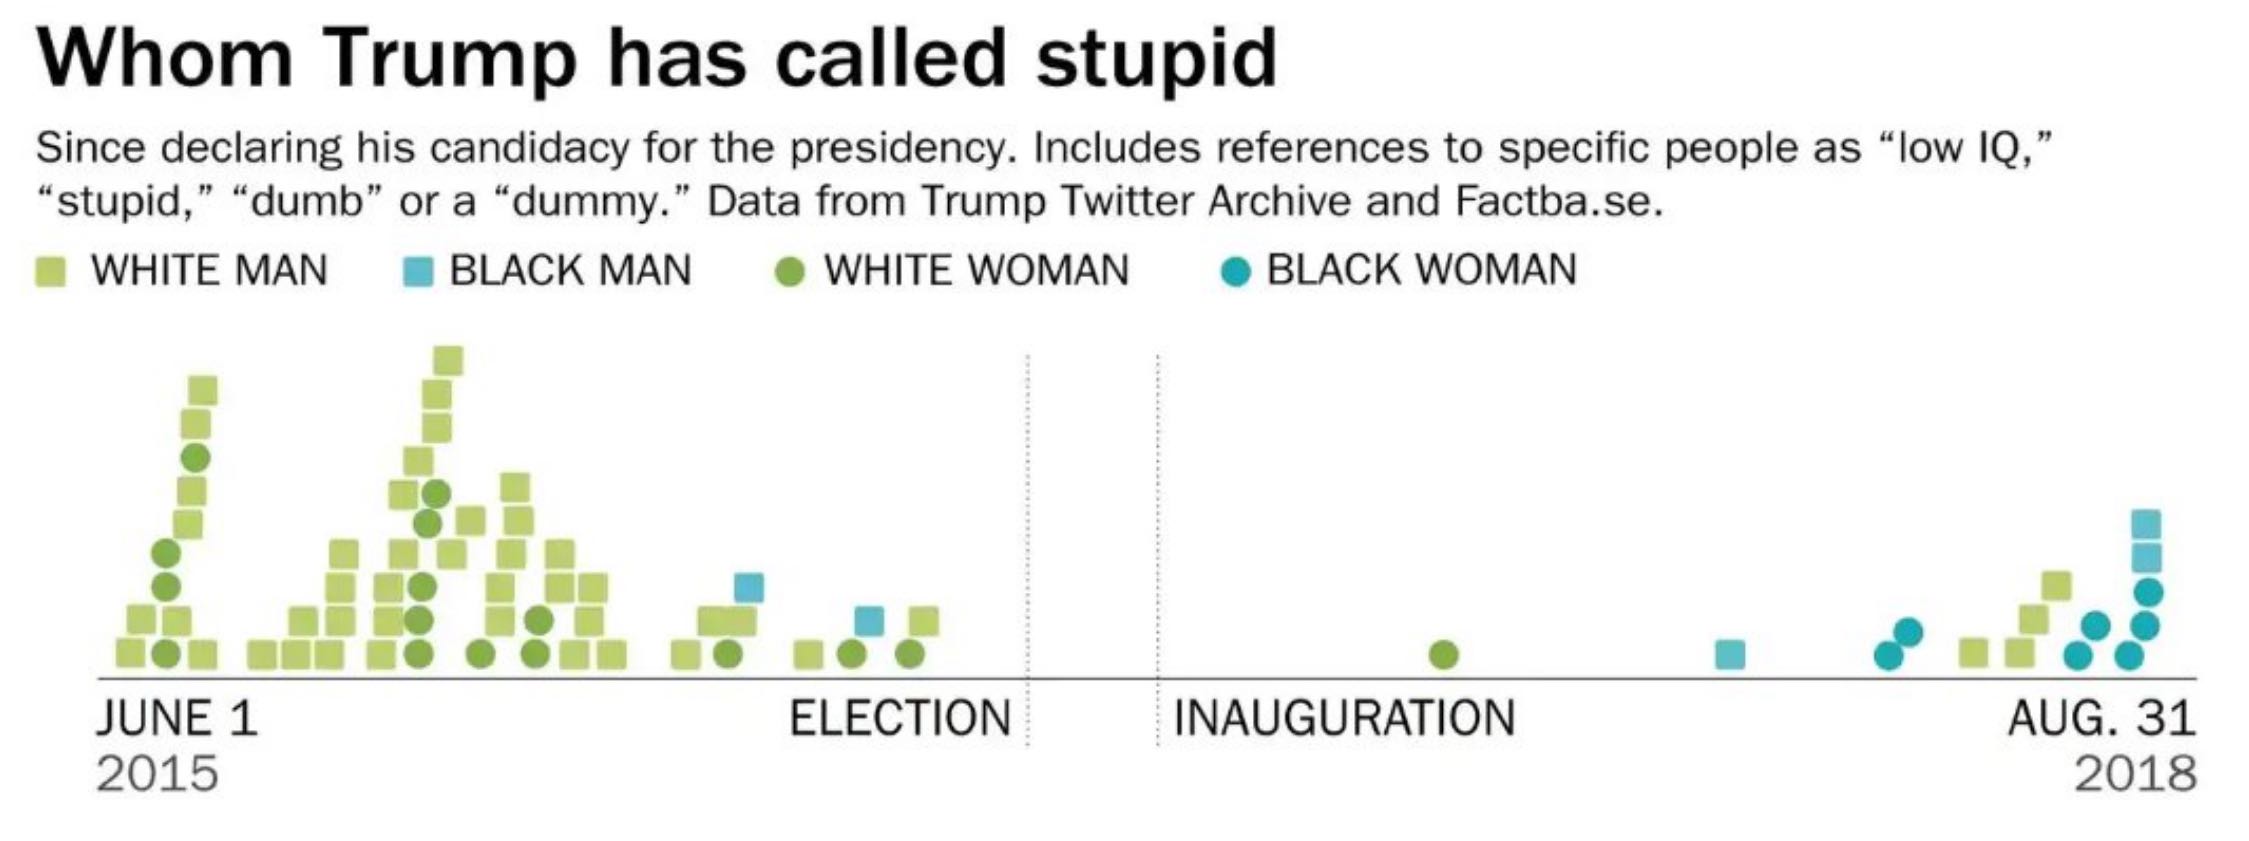 People trump has called 'stupid''